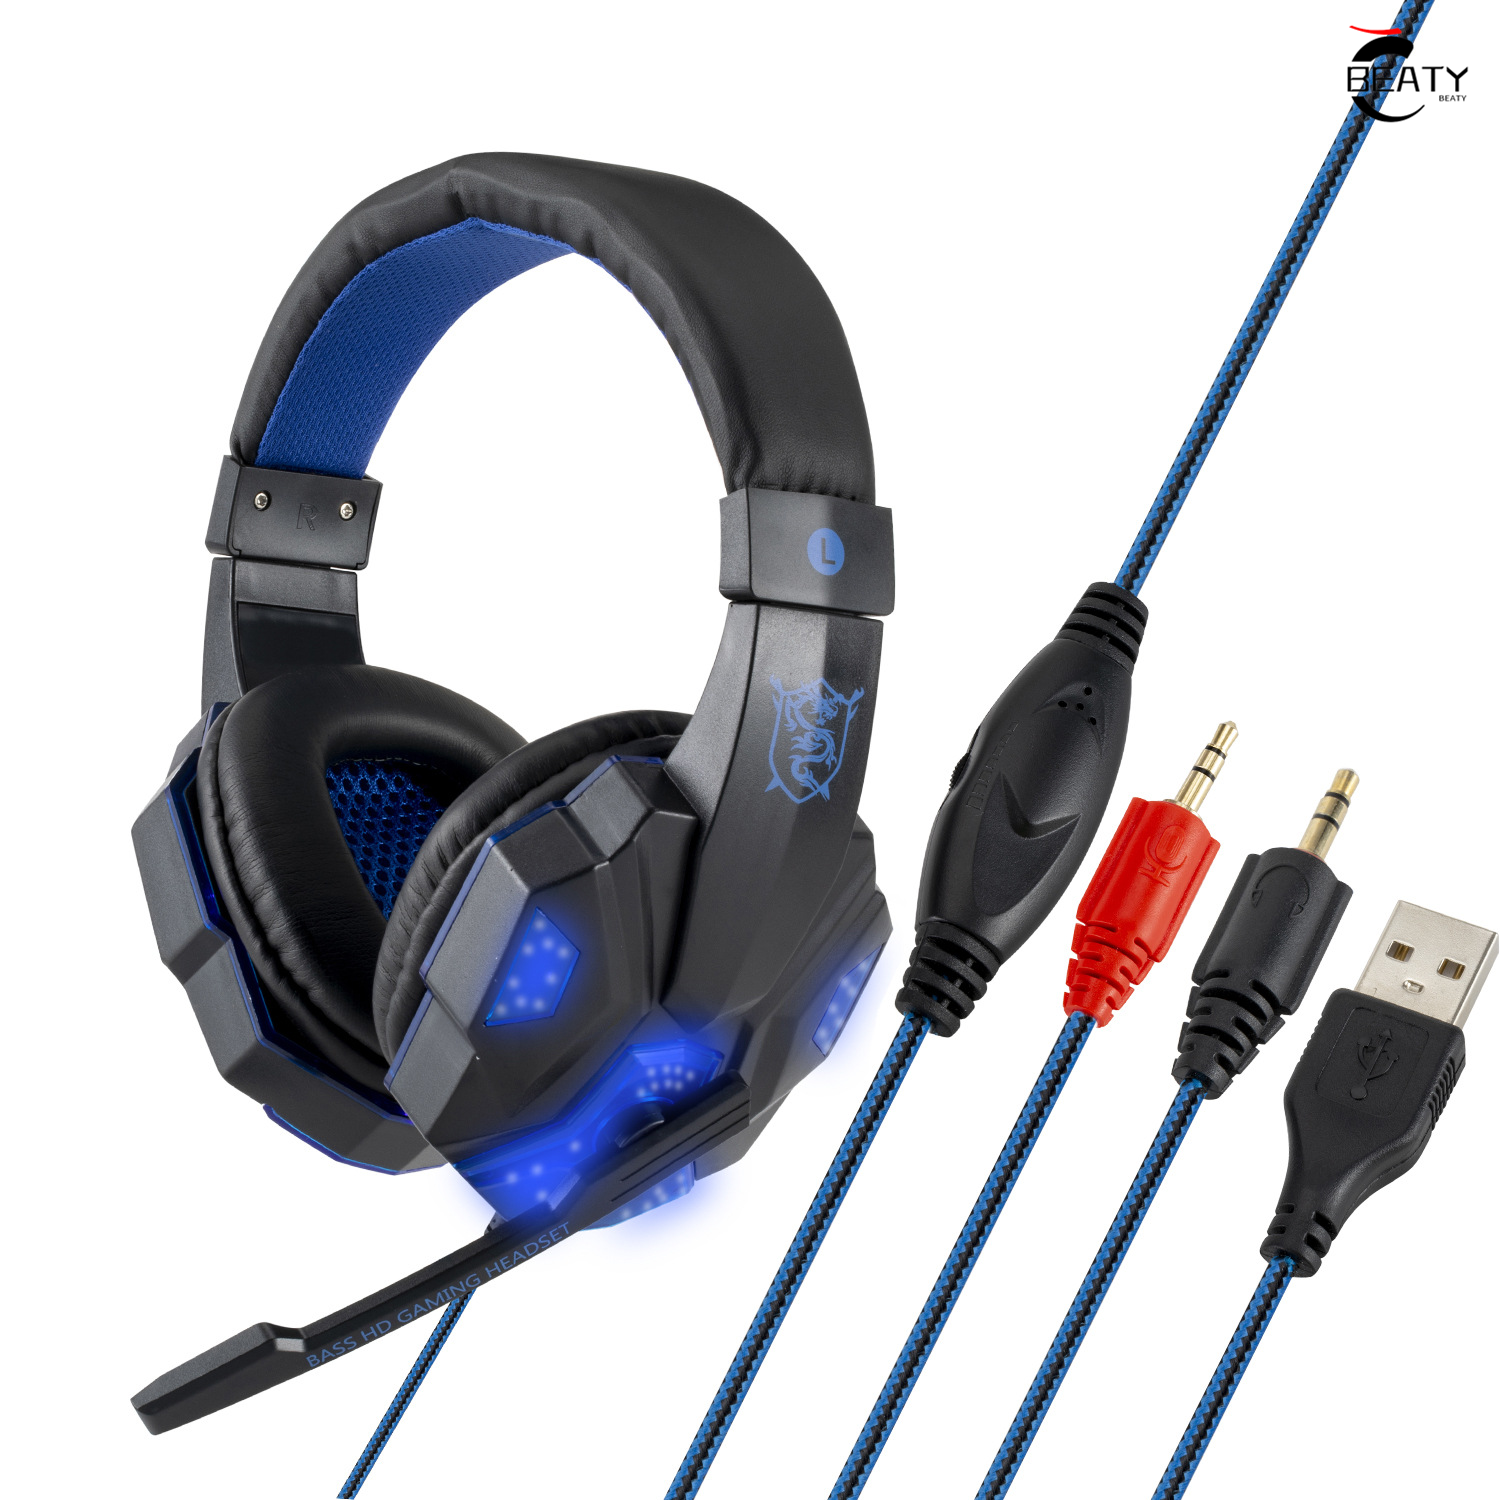 【ส่งของจากประเทศไทย】BEATY ชุดหูฟังสำหรับเล่นเกมดั้งเดิมหูฟังสเตอริโอรอบทิศทาง 3.5 มม. พร้อมไมโครโฟนสำหรับ PS4 / PS3 / XBox Head-mounted Wired Gaming Headset